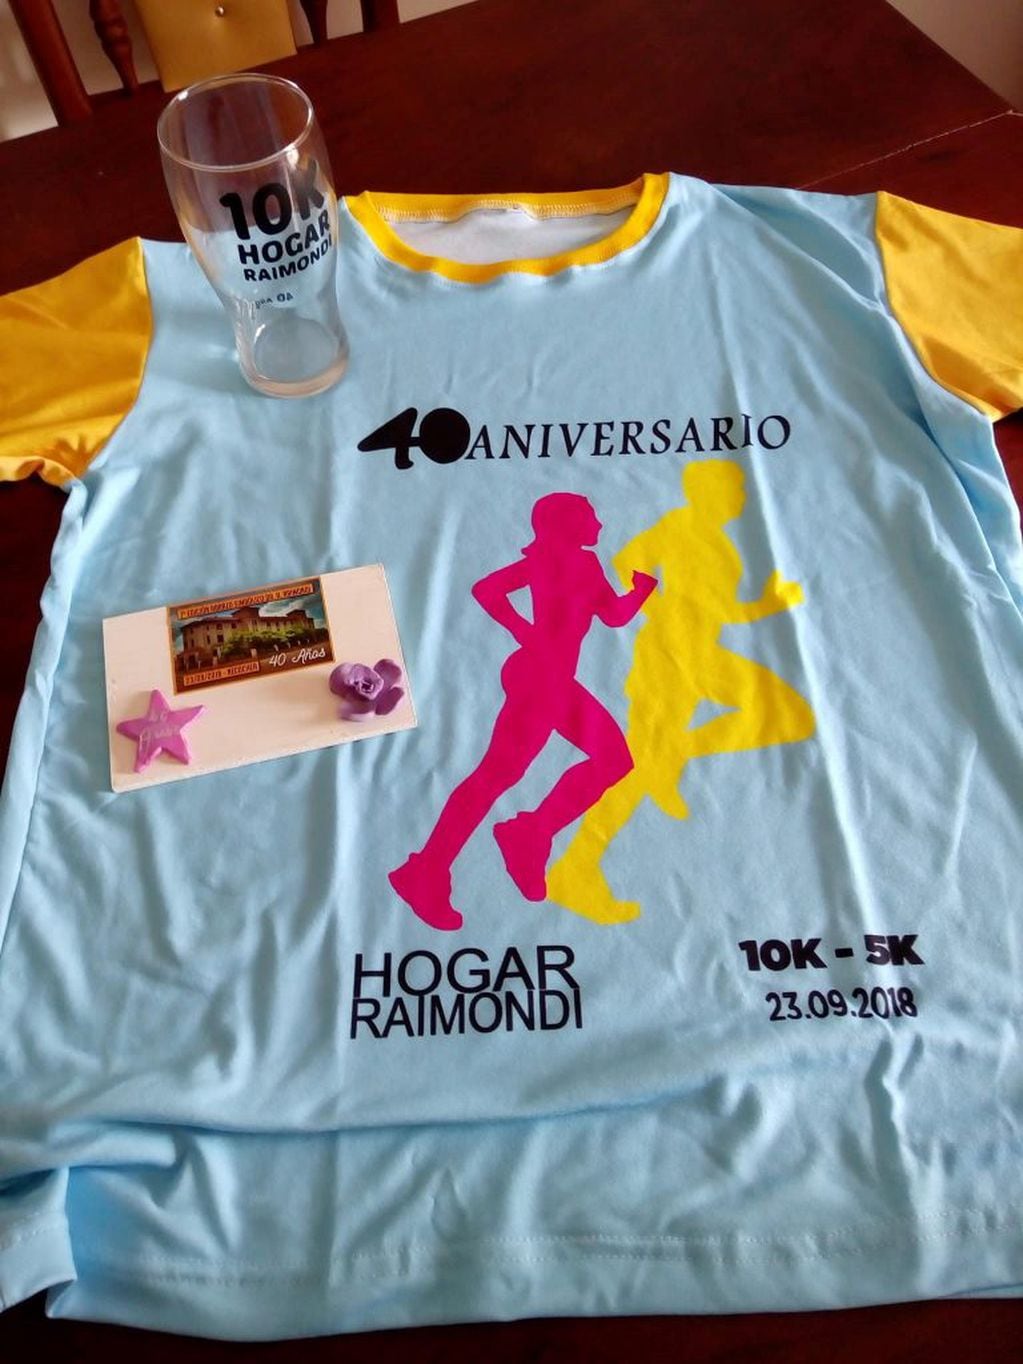 Camiseta para los corredores de los 5K y 10 K del 40° Aniversario del Hogar Raimondi.